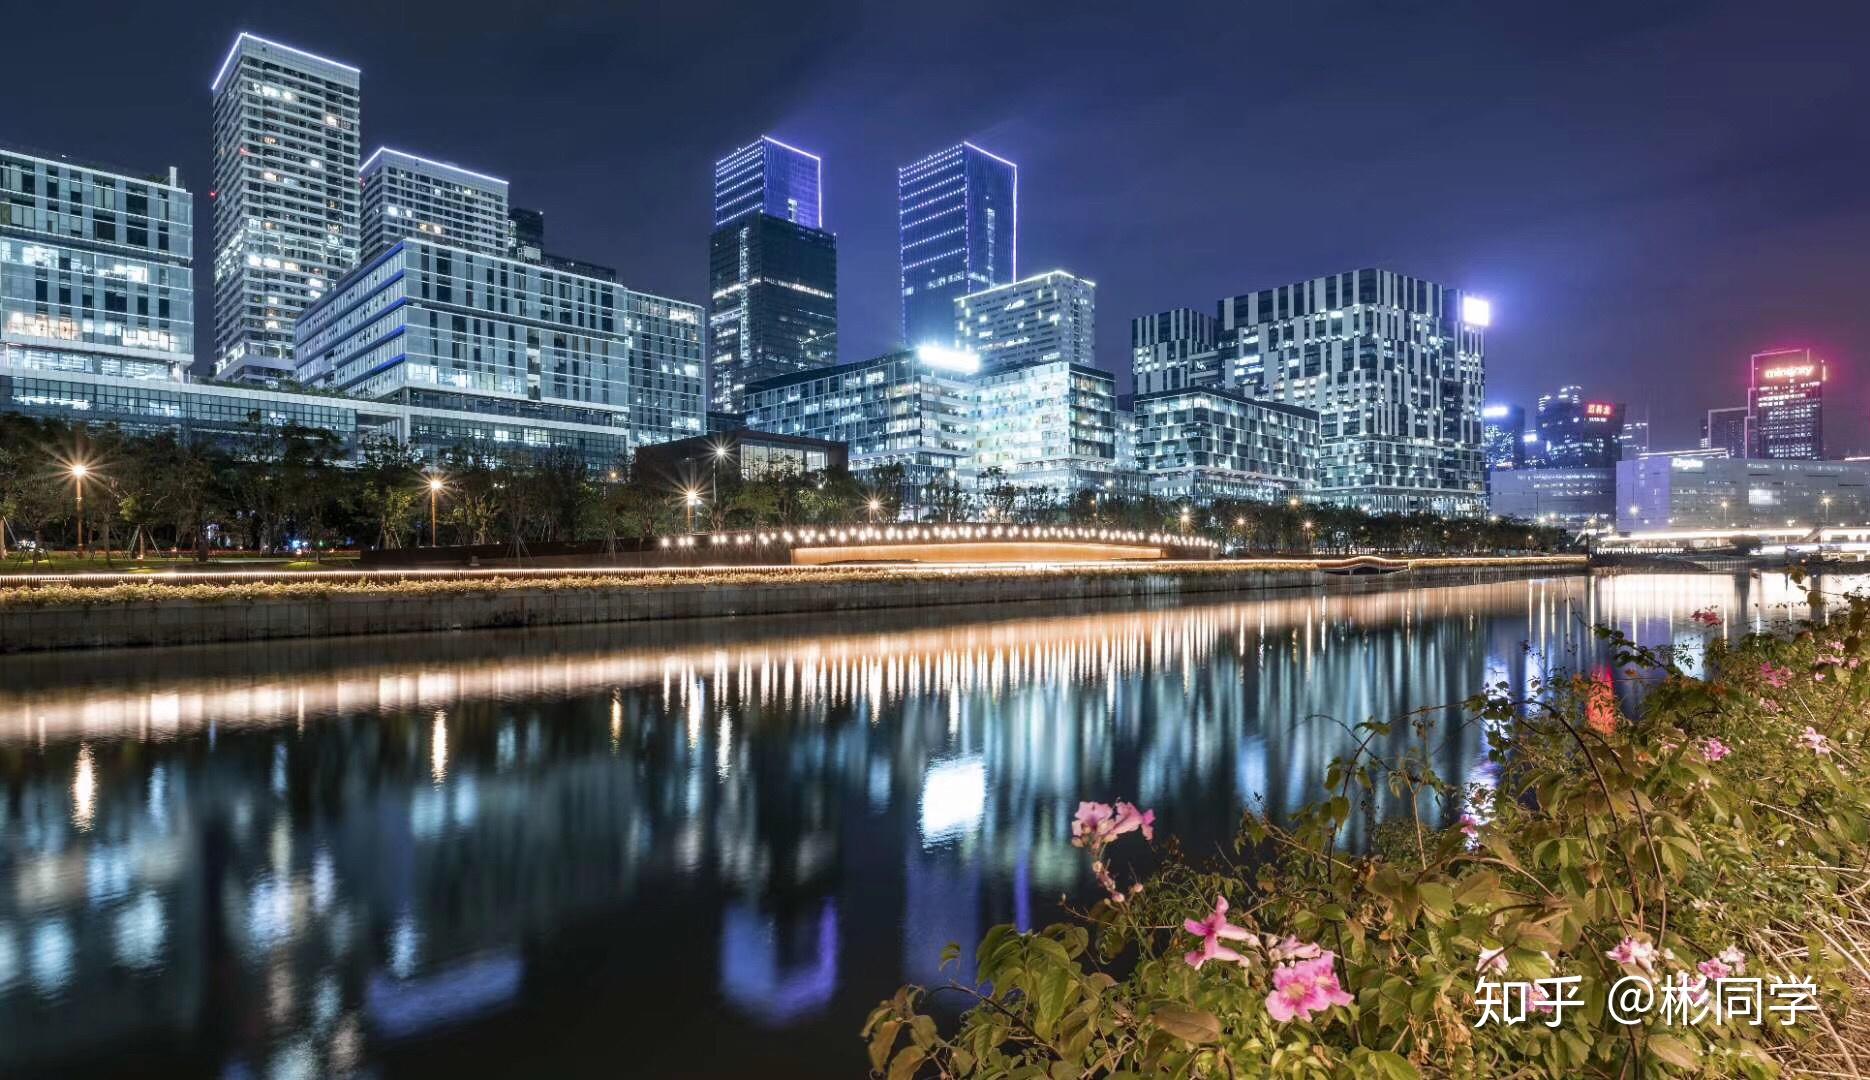 深圳有好看的夜景照片吗？ - 知乎